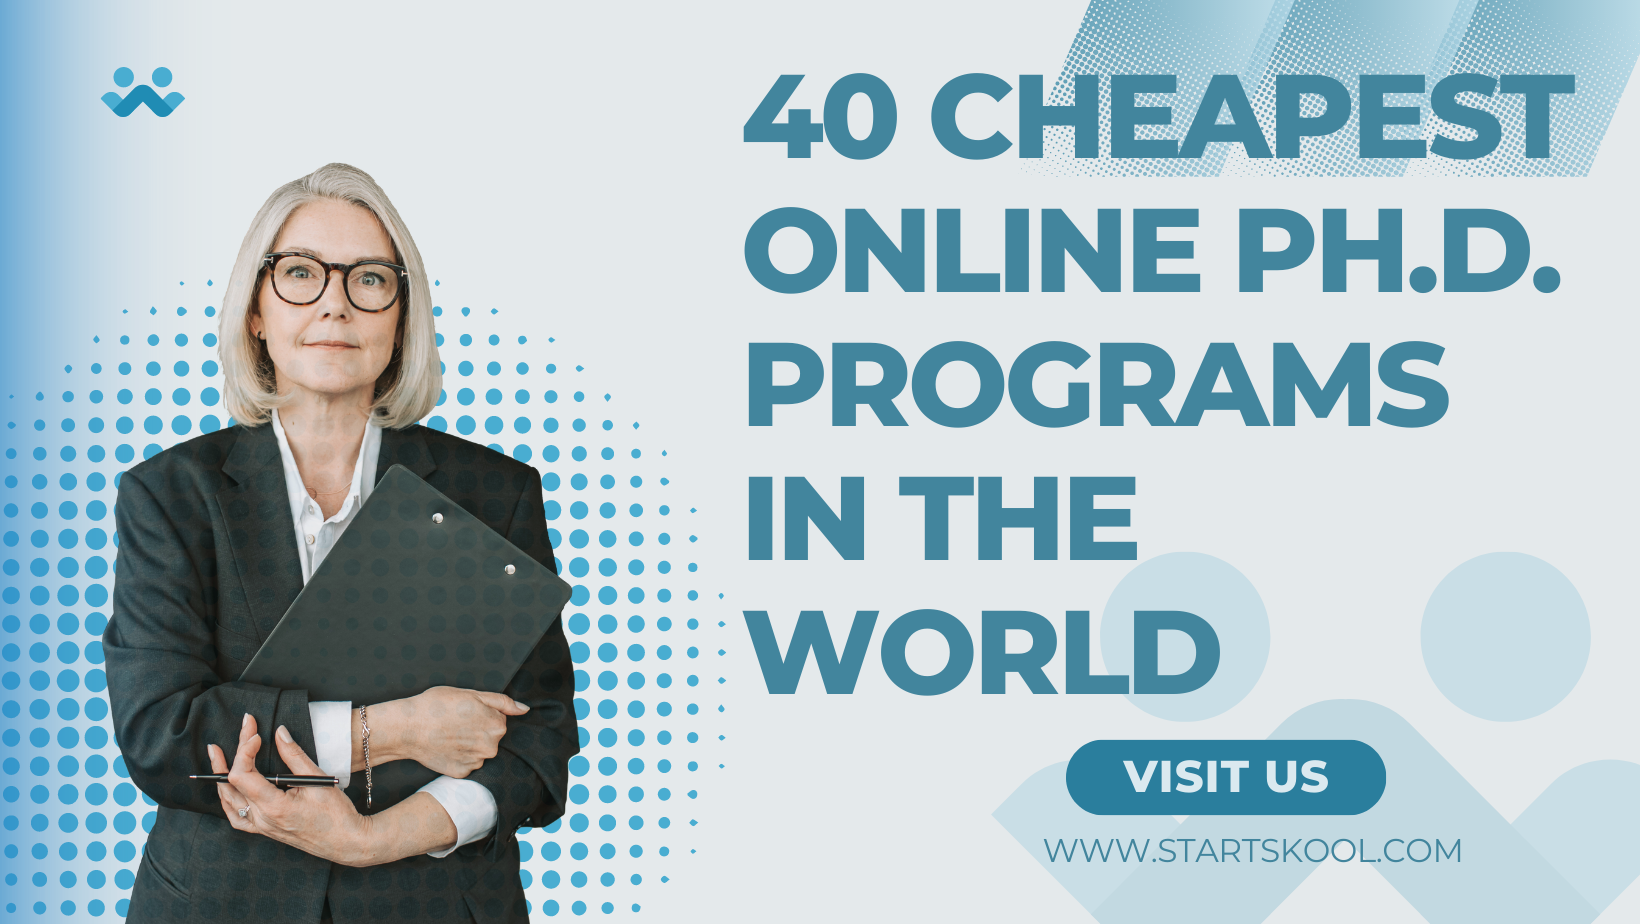 cheapest online phd education program